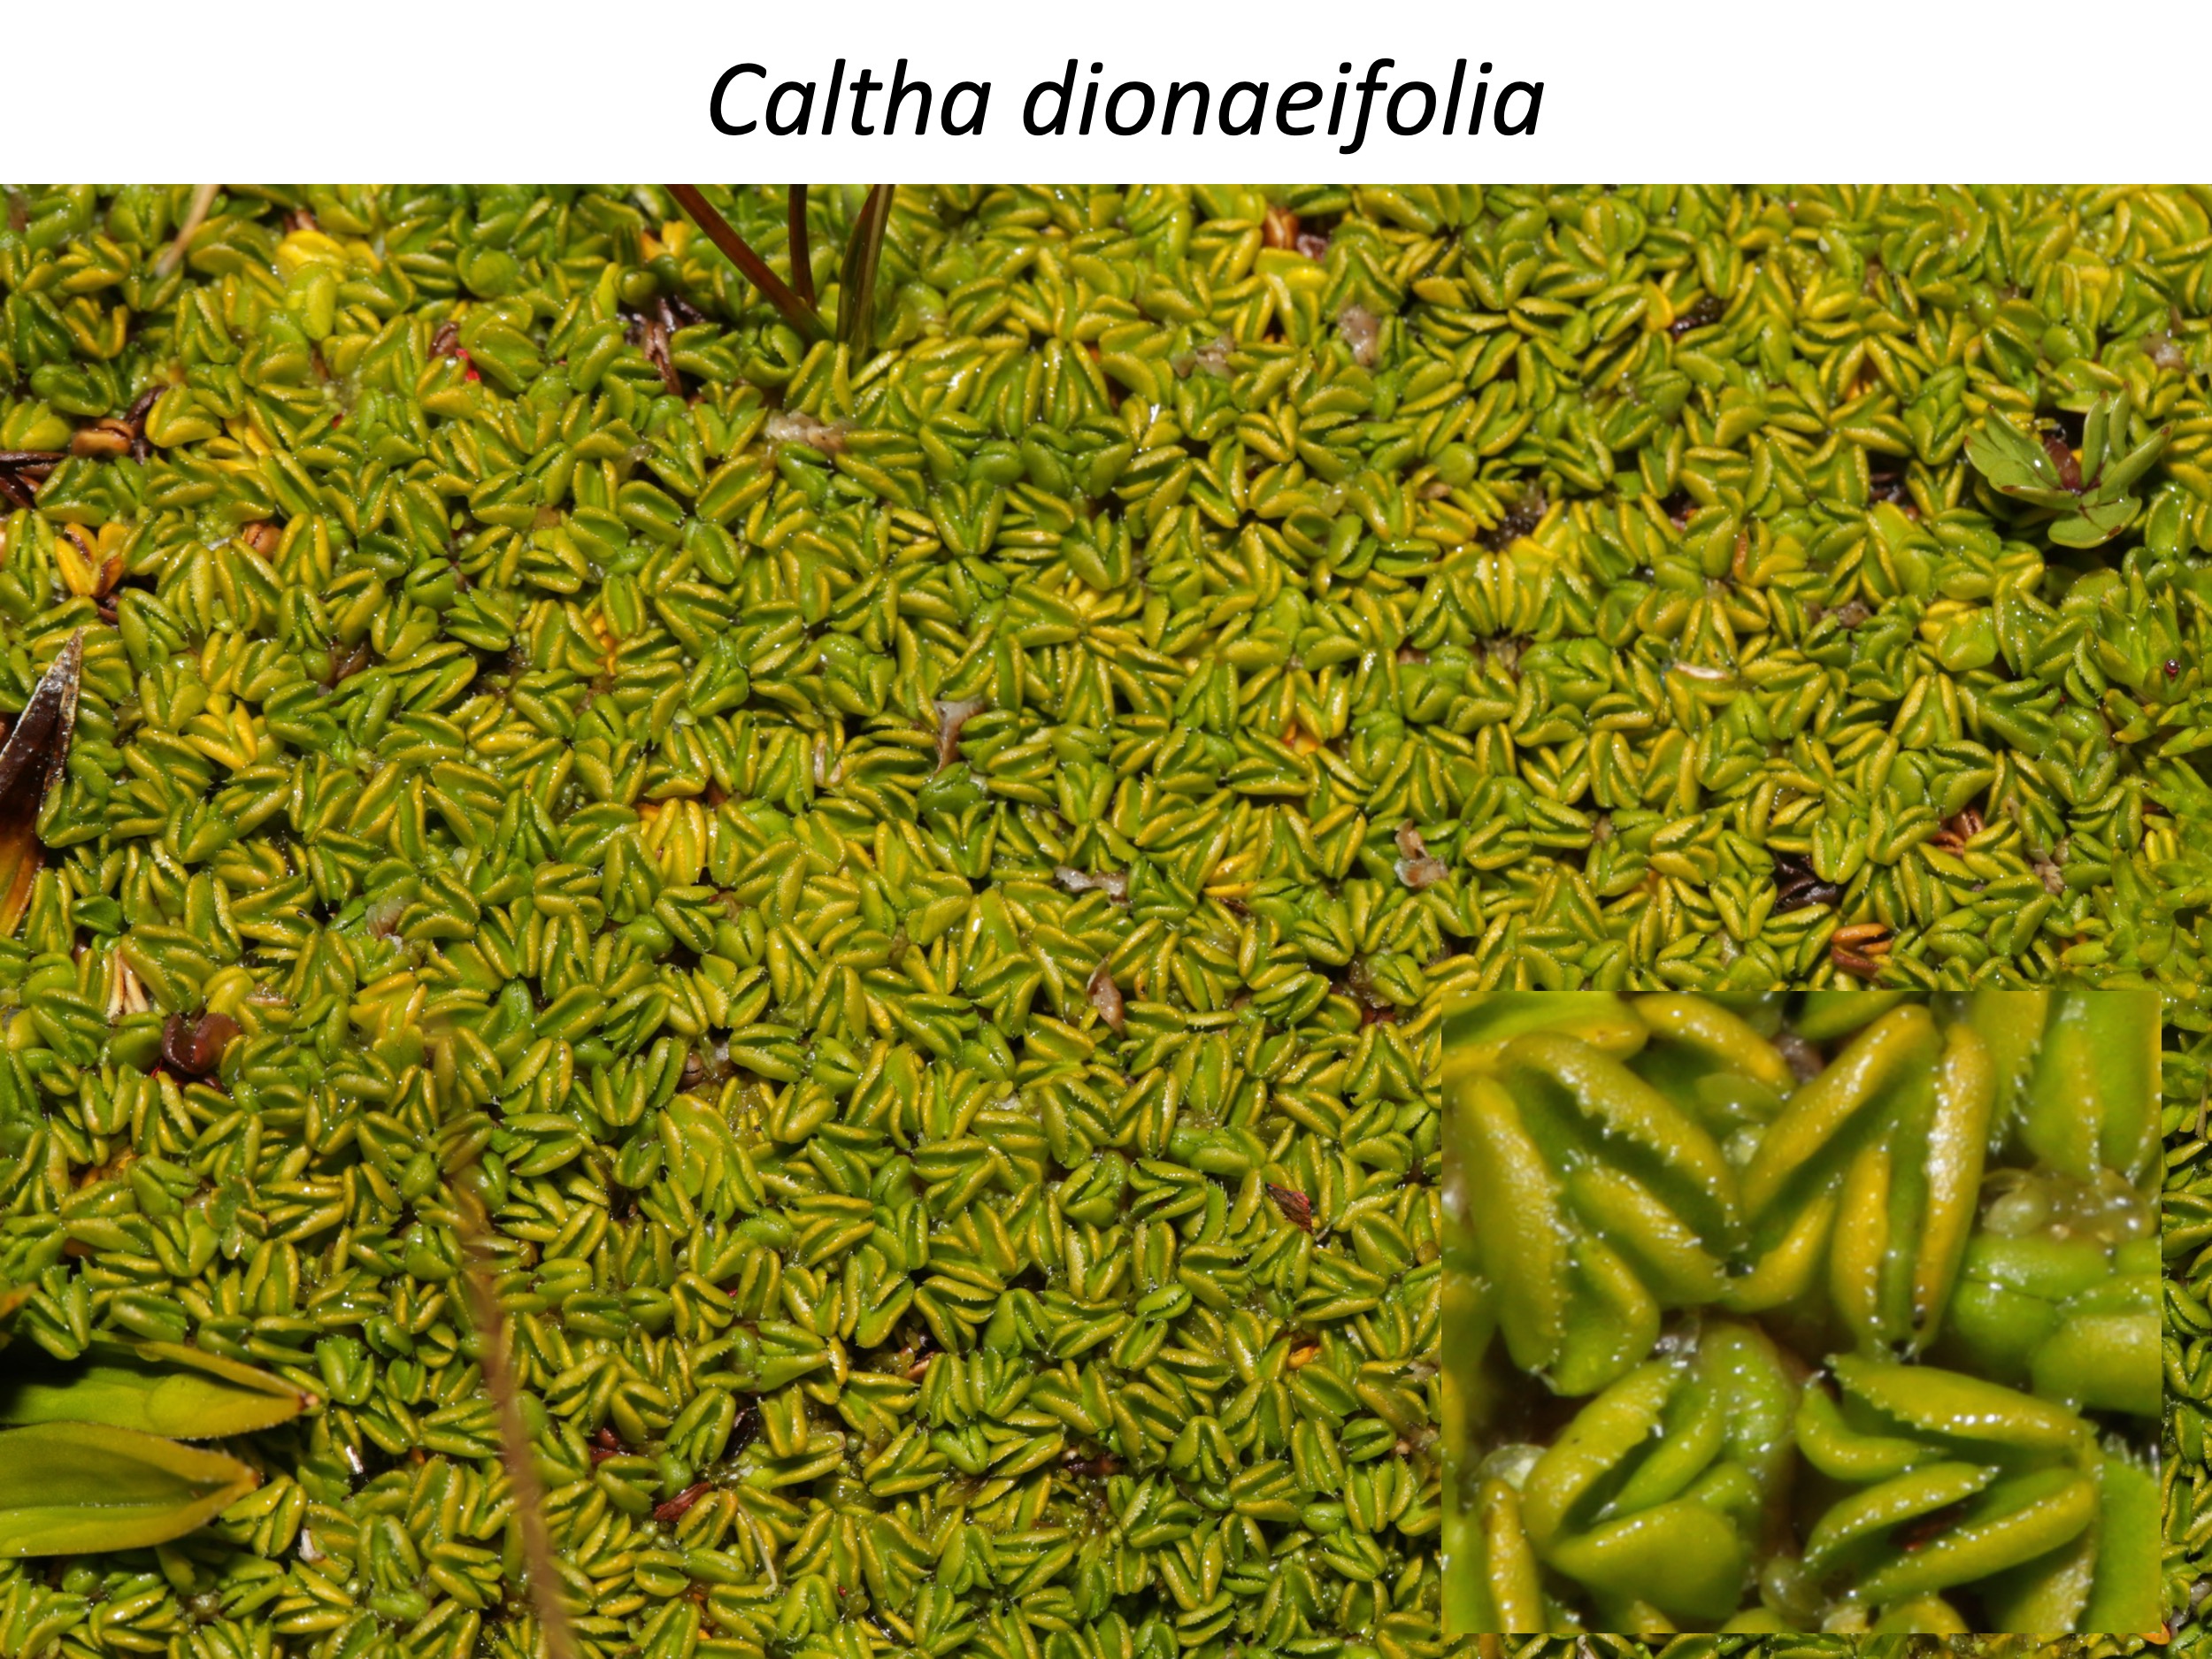 Caltha dionaeifolia